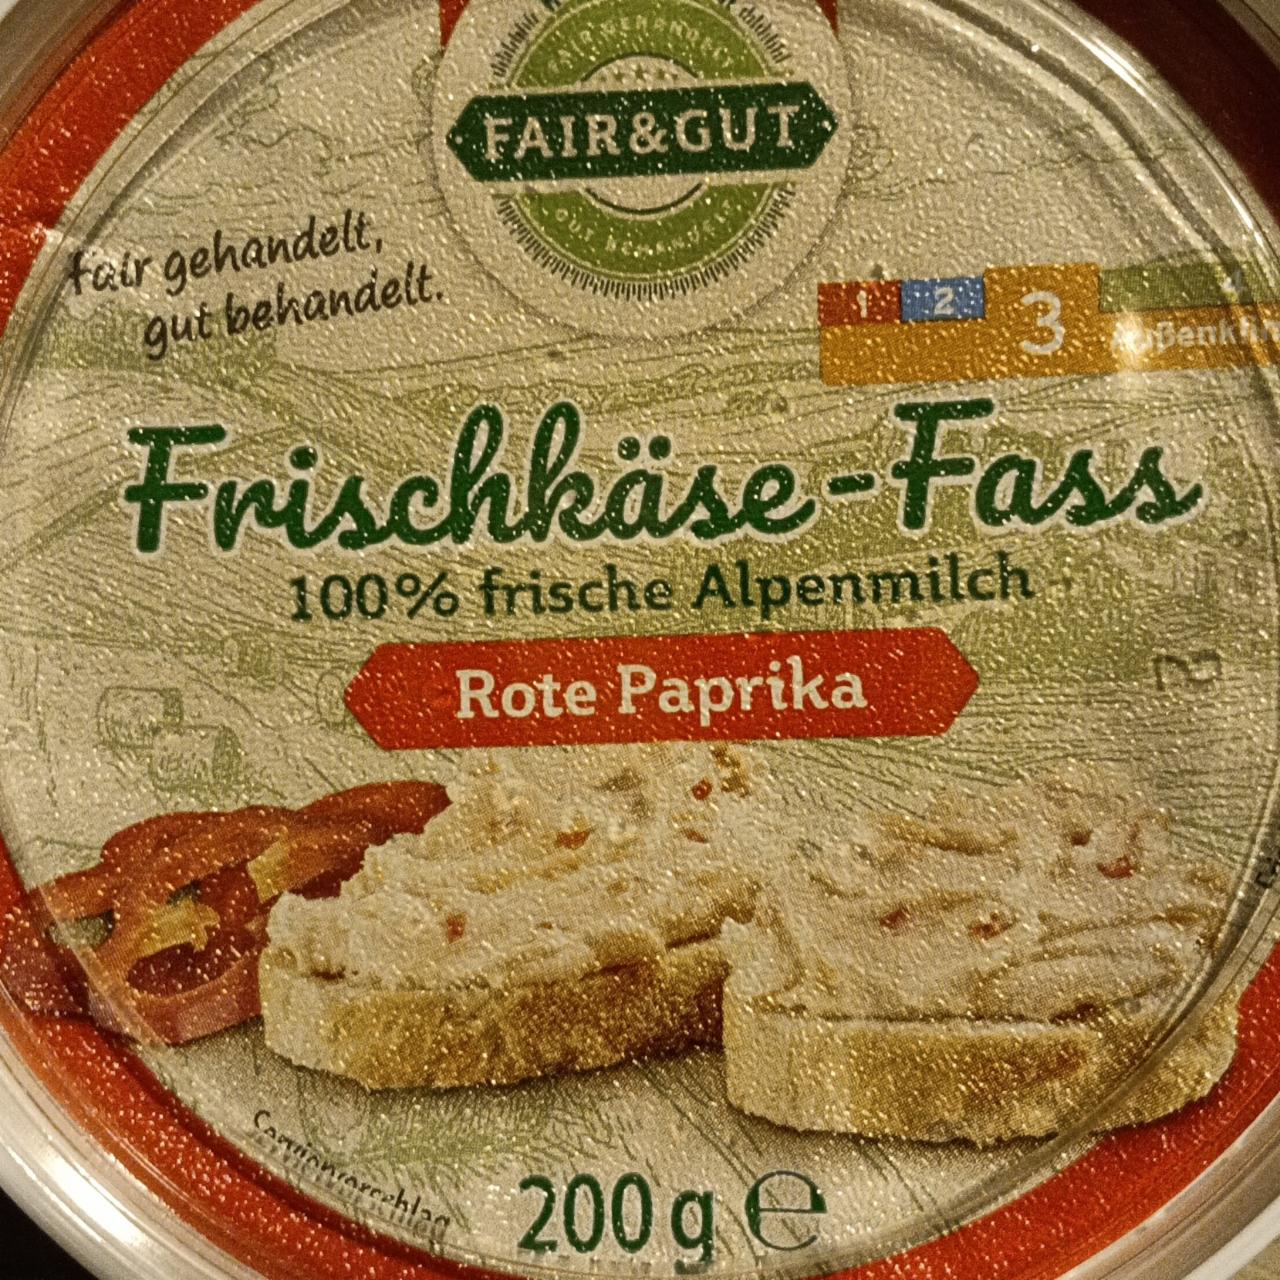 Fotografie - Frischkäse-Fass Rote Paprika Fair & Gut